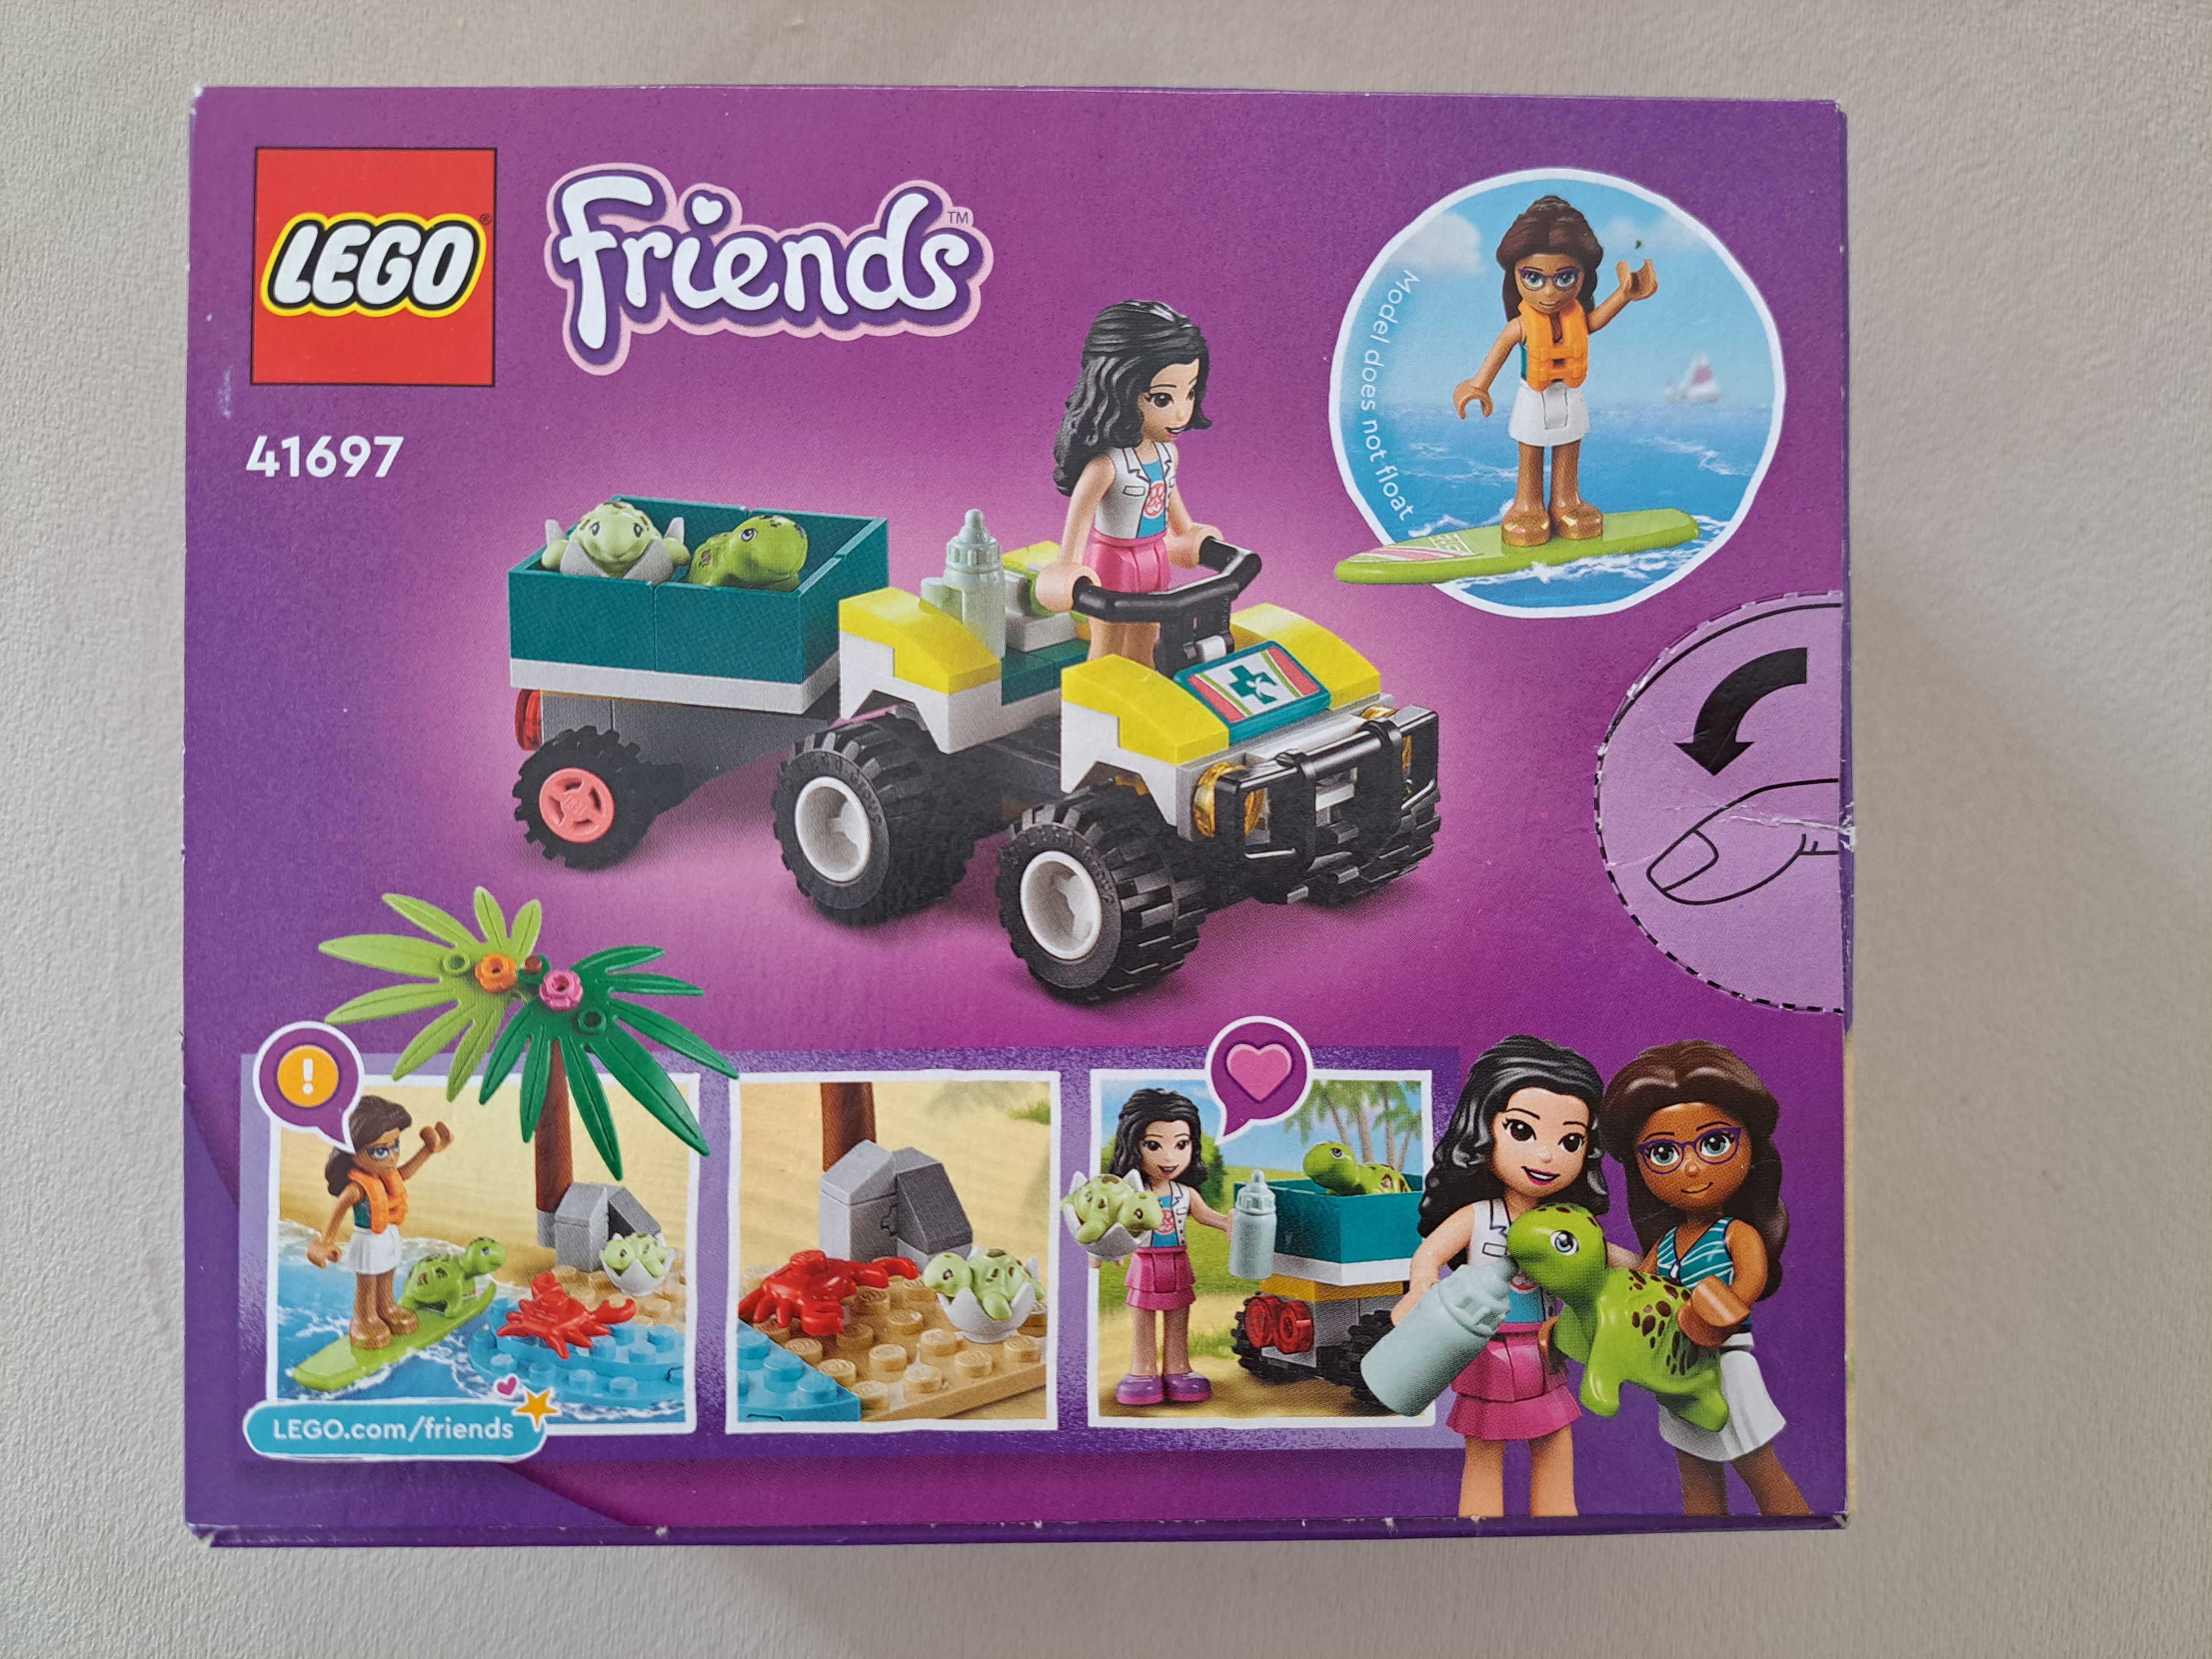 NOWE Lego Friends 41697 + plecak pluszak